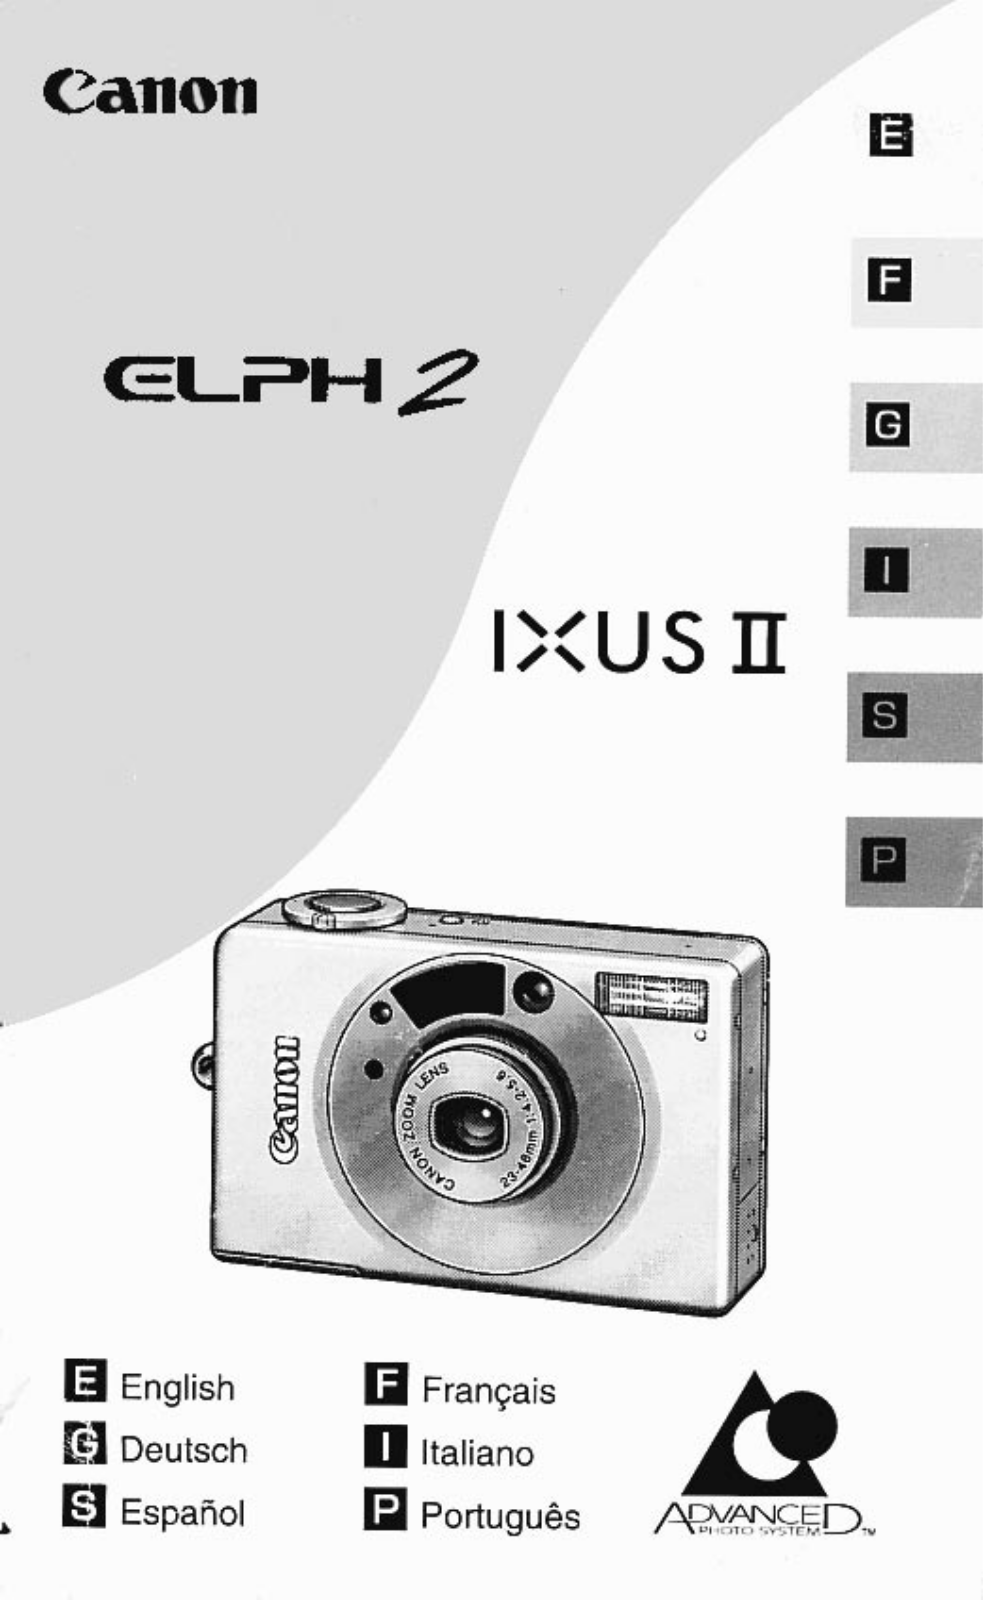 Canon ELPH 2, IXUS II User Manual